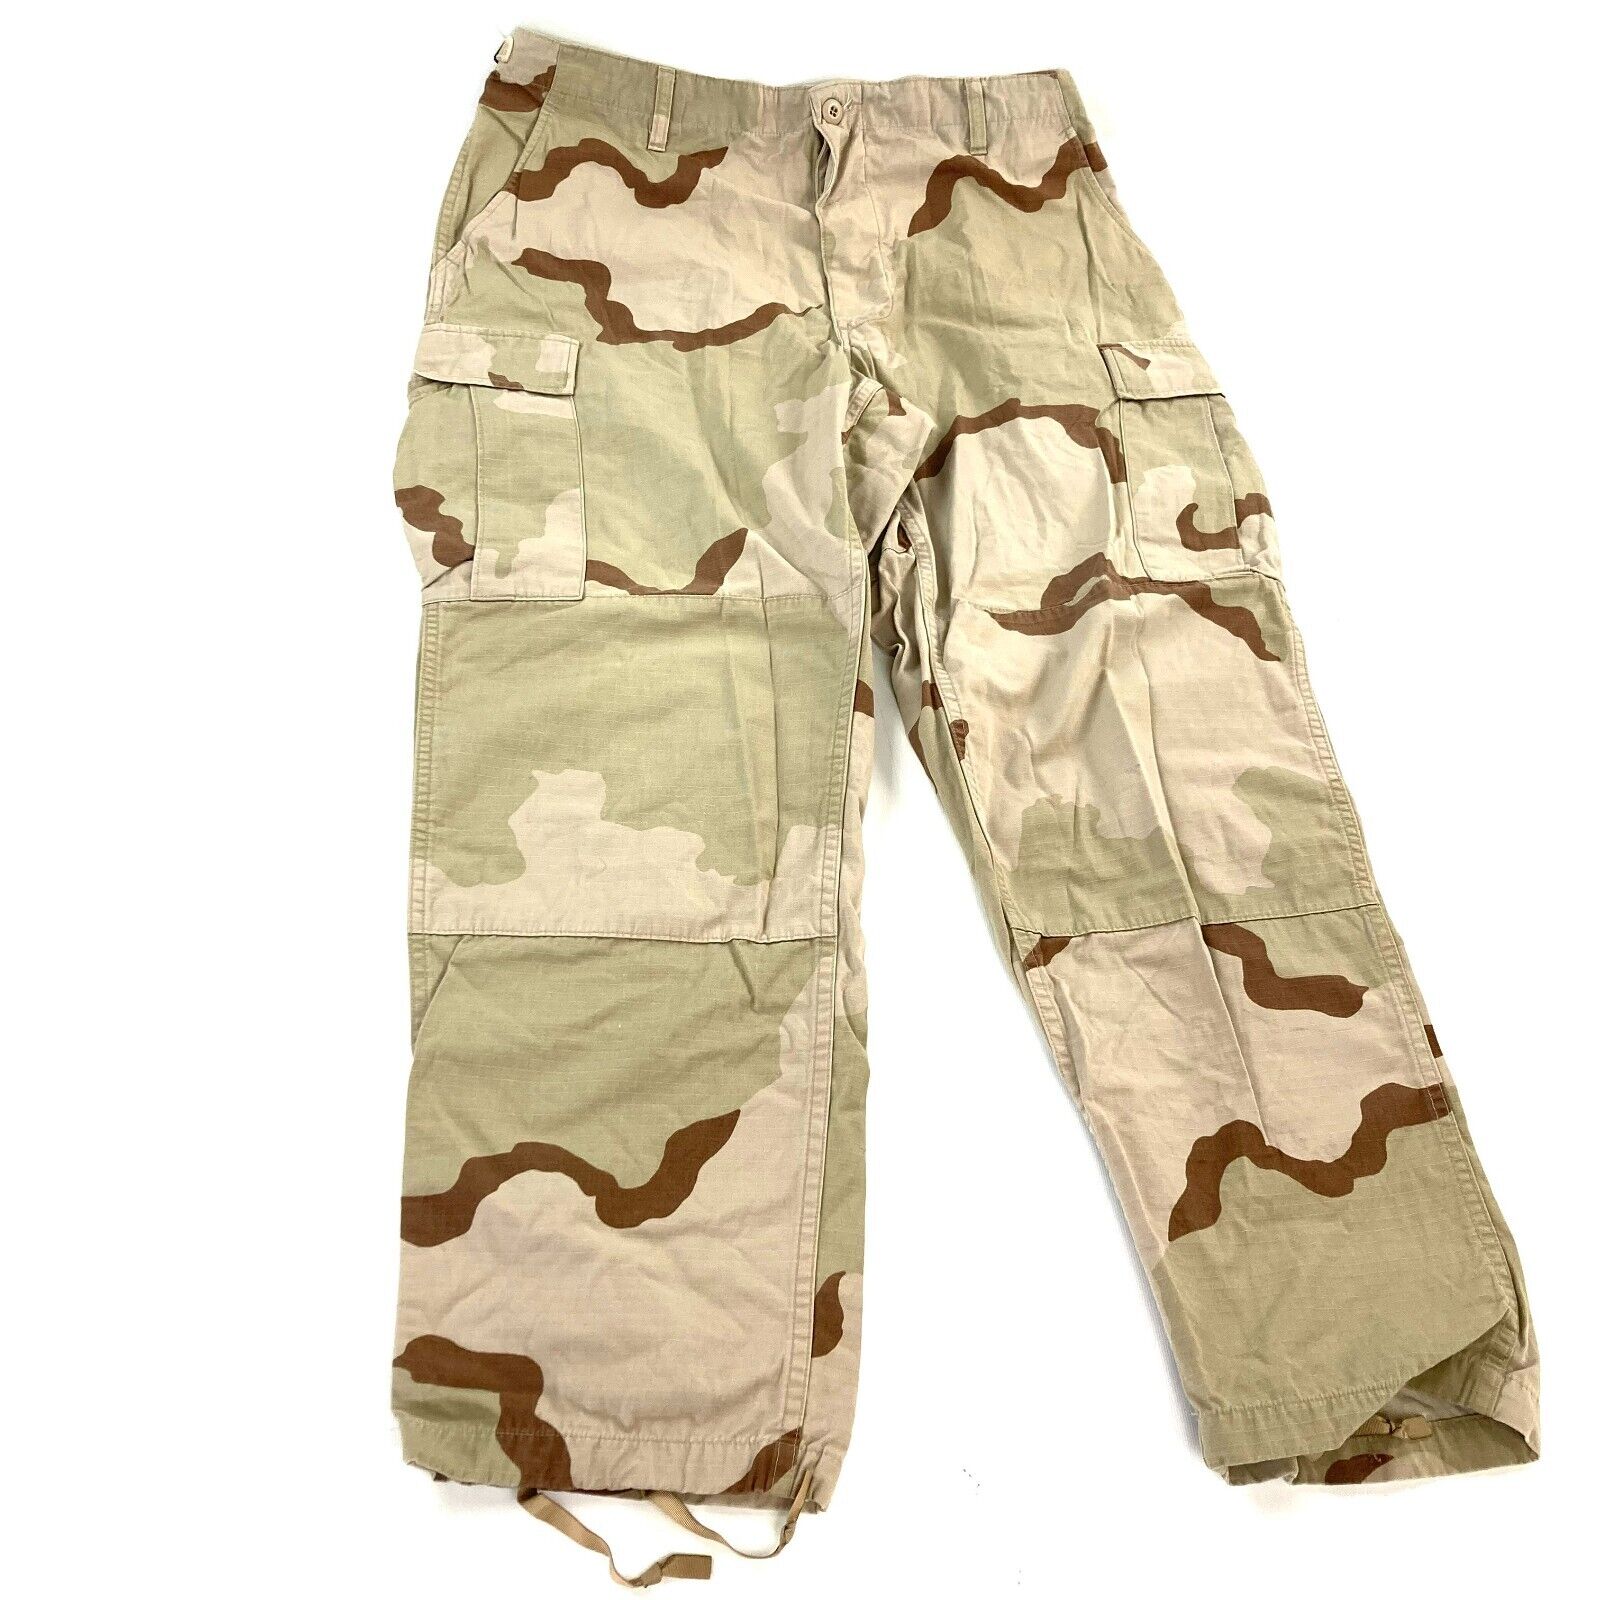 USGI Desert DCU 3 Color Camouflage Combat Pants Trousers Size Medium Short